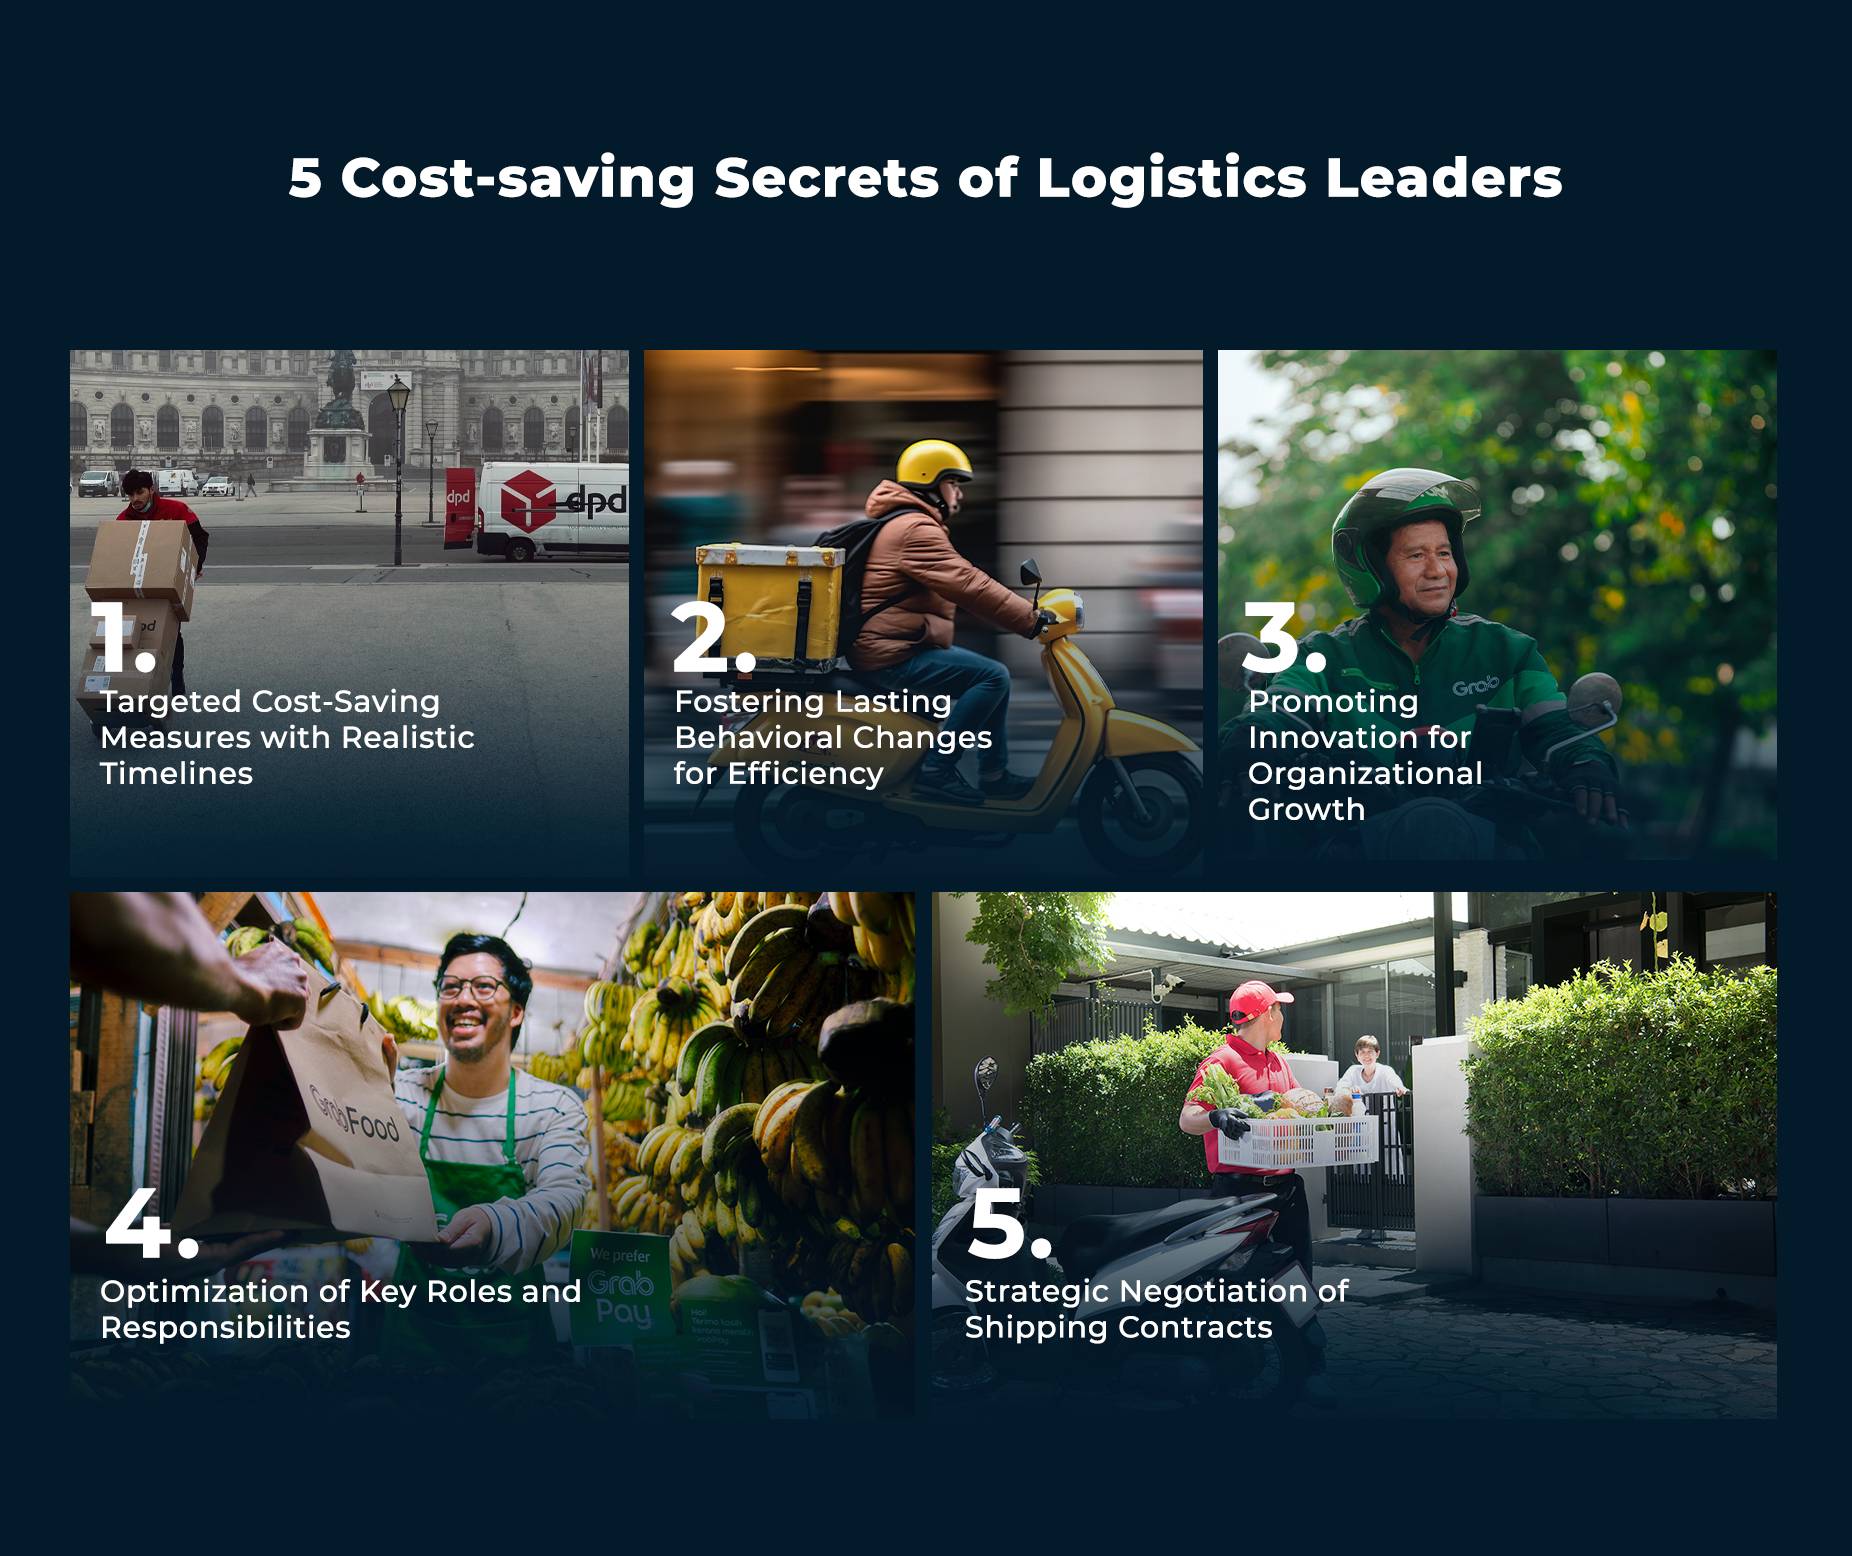 5 secretos de los líderes en logística para ahorrar costos en la cadena de suministro